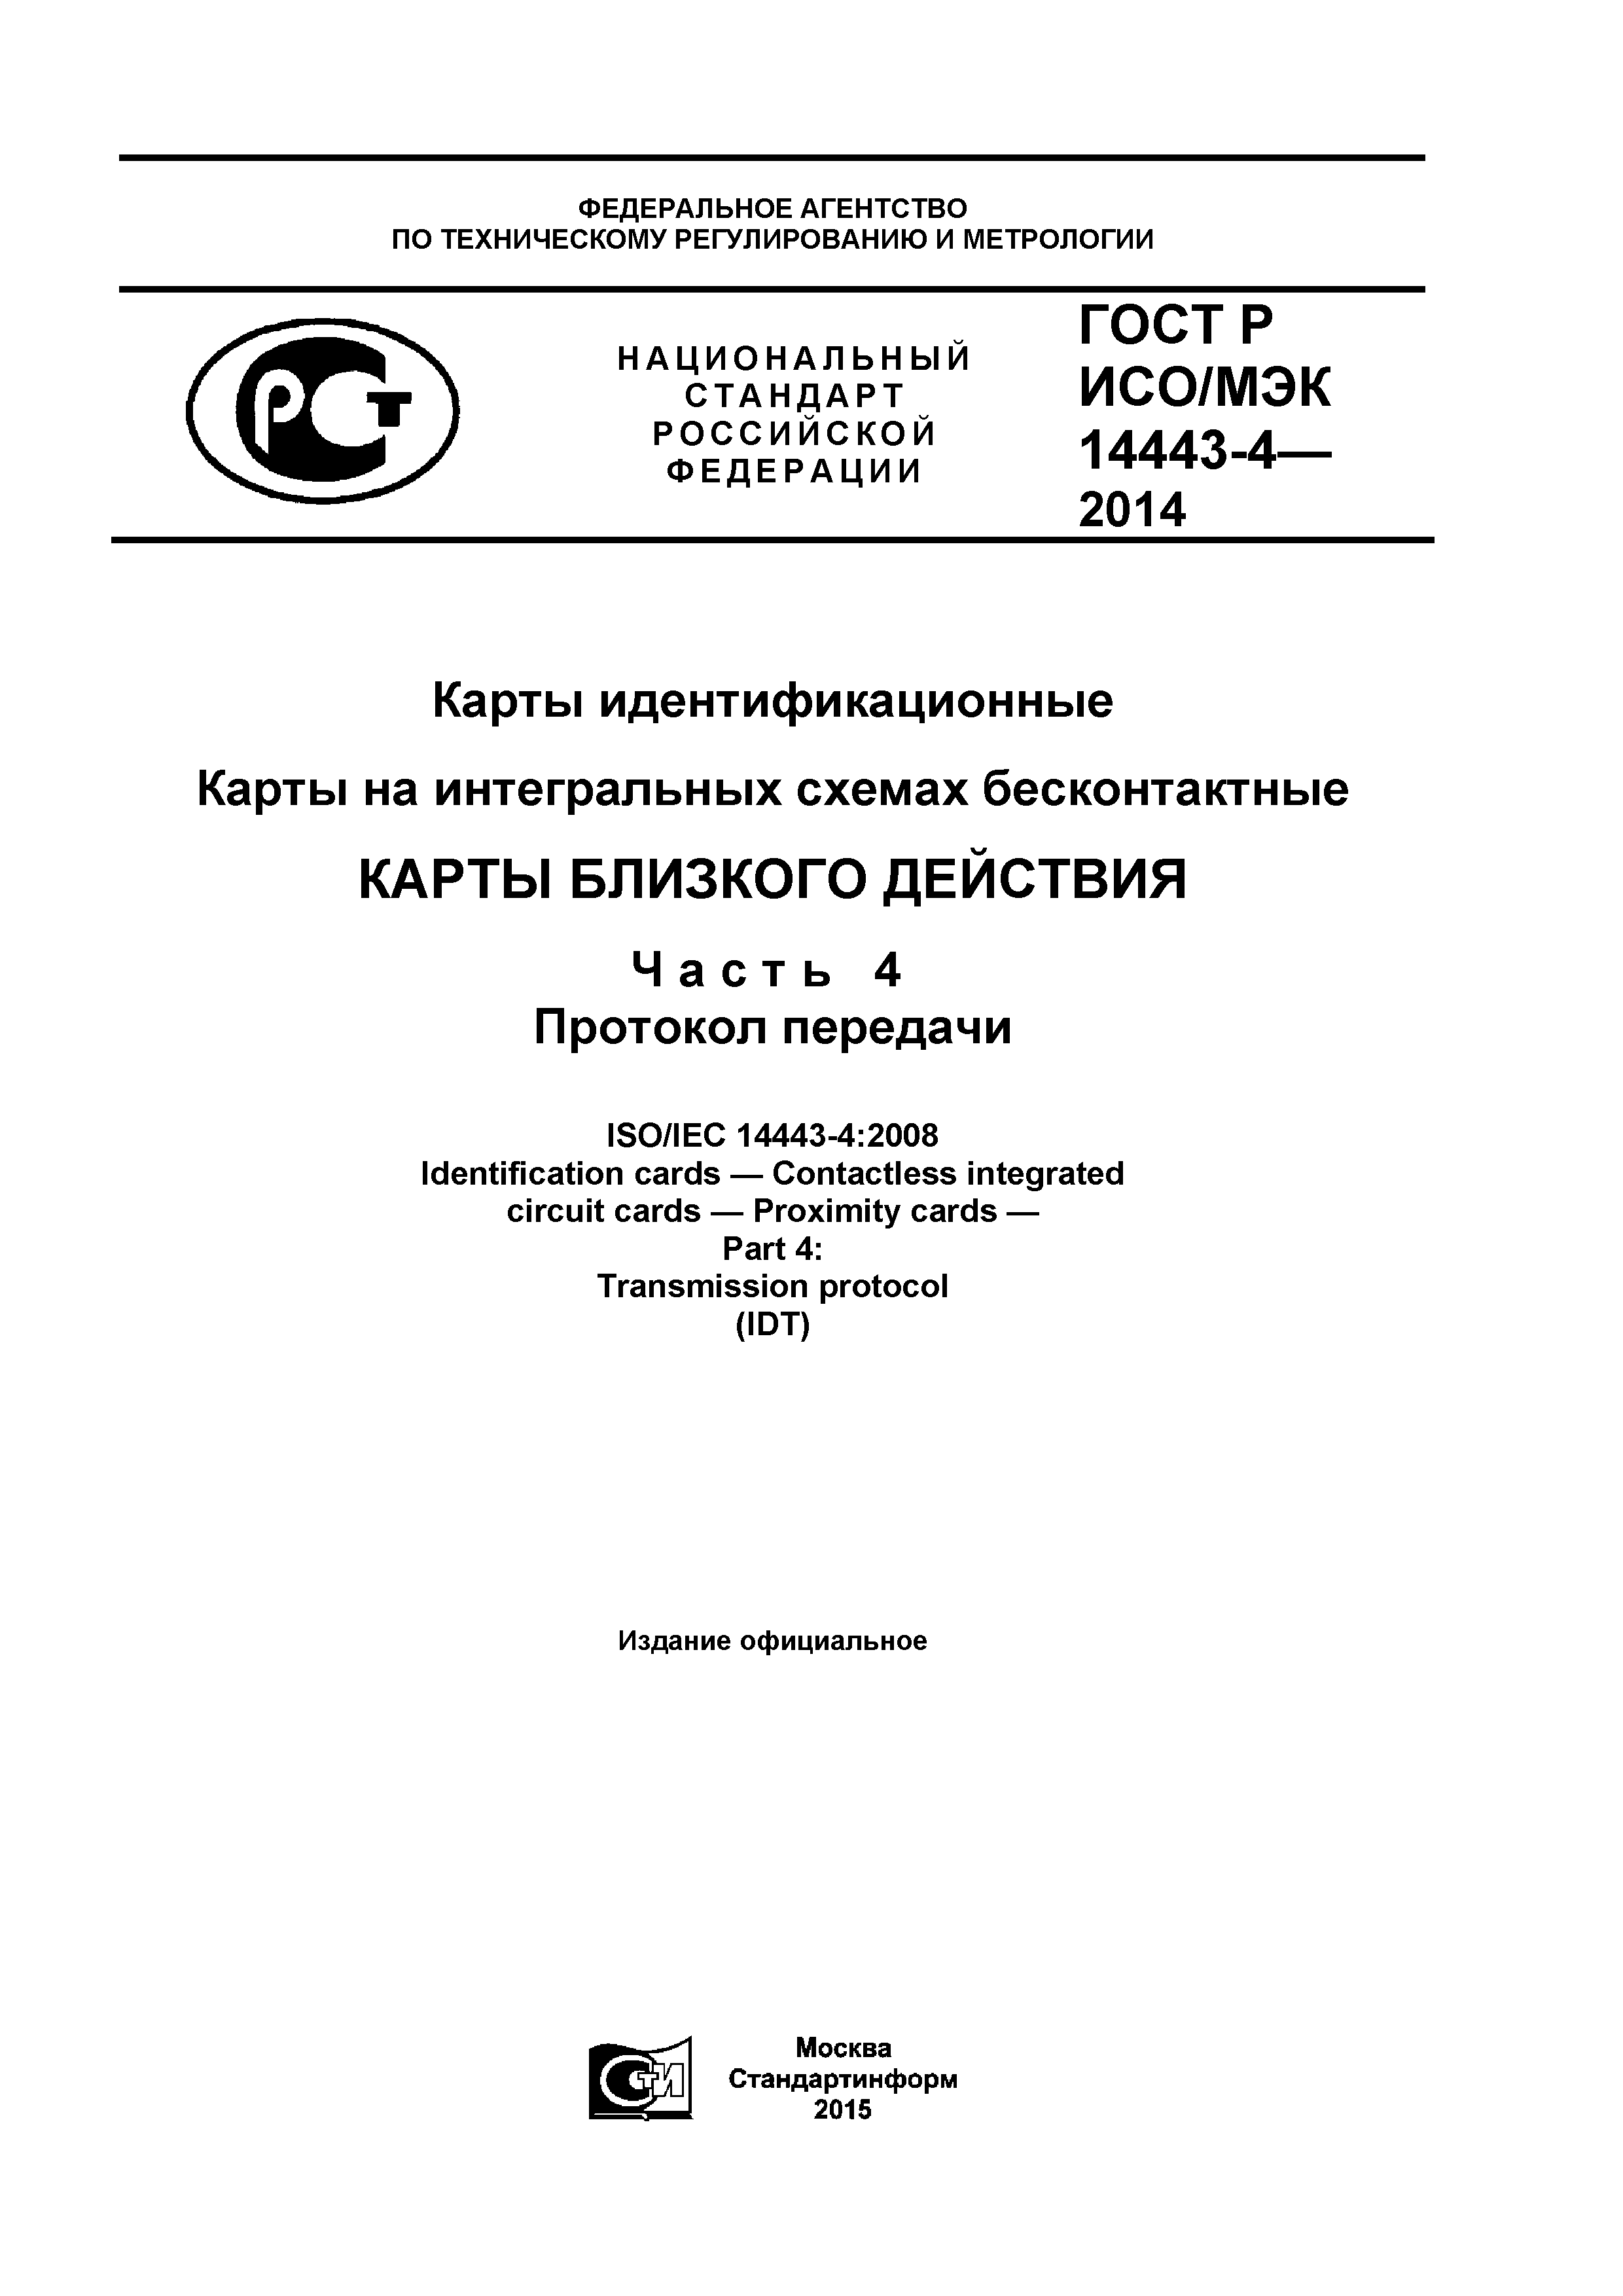 ГОСТ Р ИСО/МЭК 14443-4-2014